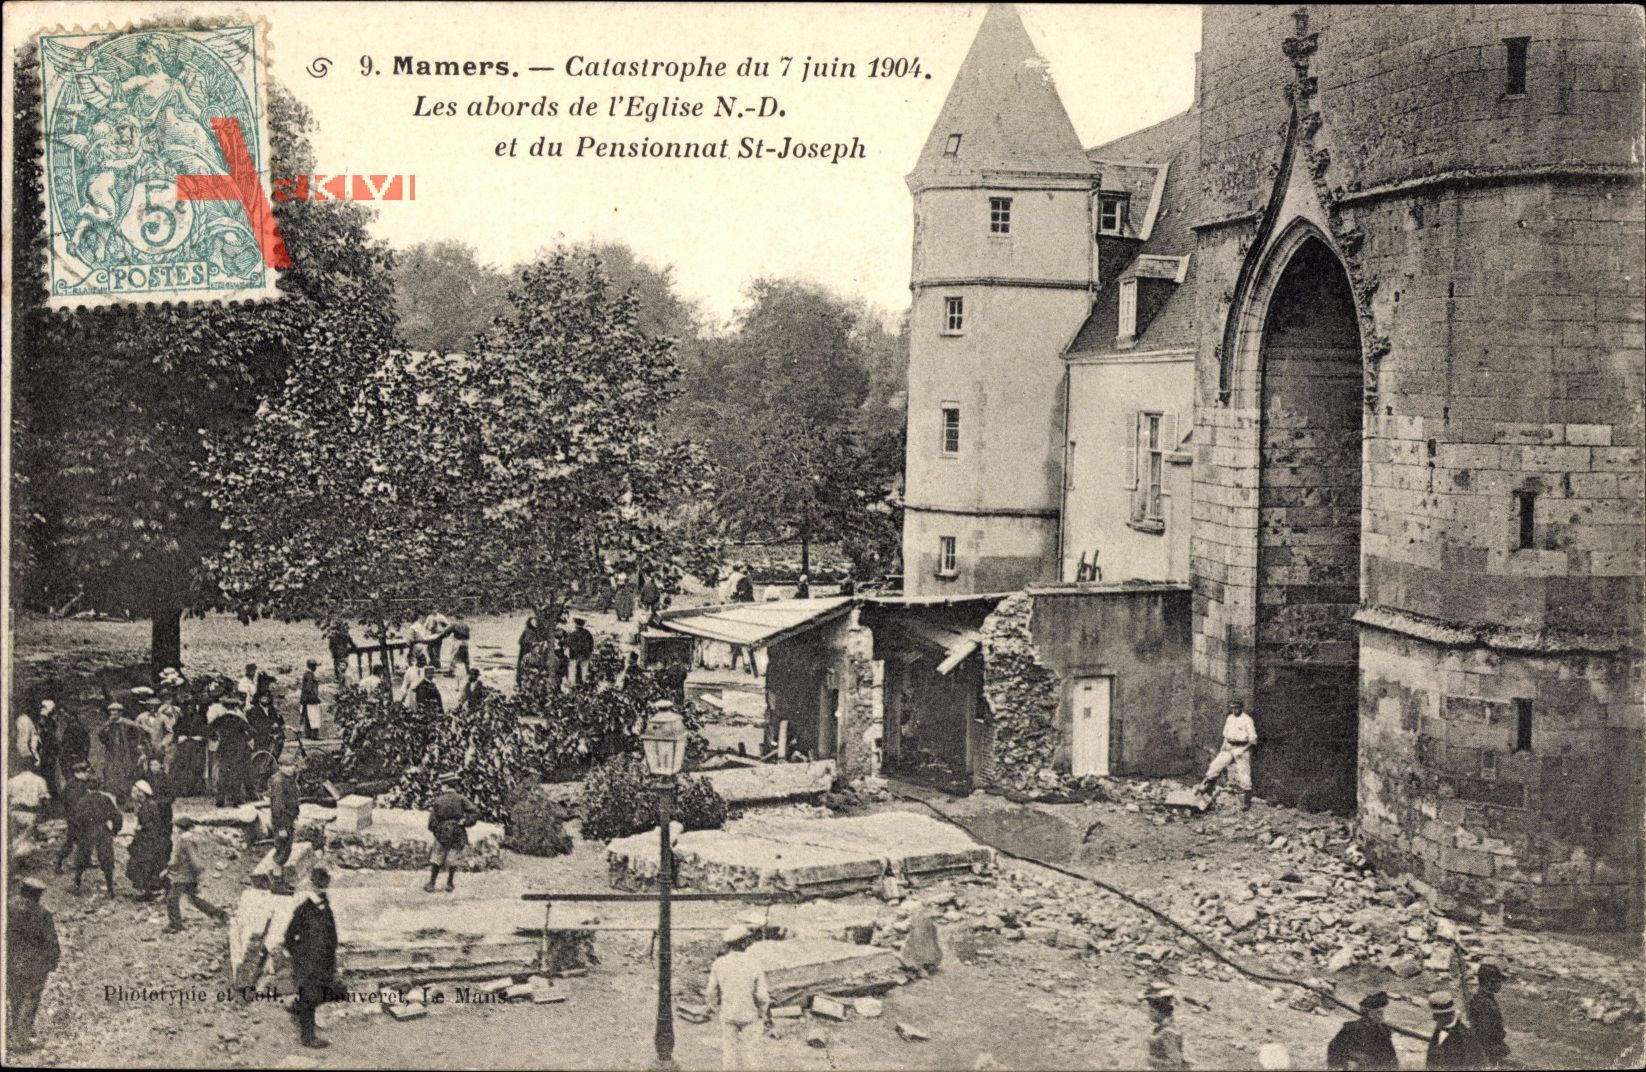 Mamers Sarthe, Catastrophe du 7 juin 1904, les abords de lEglise